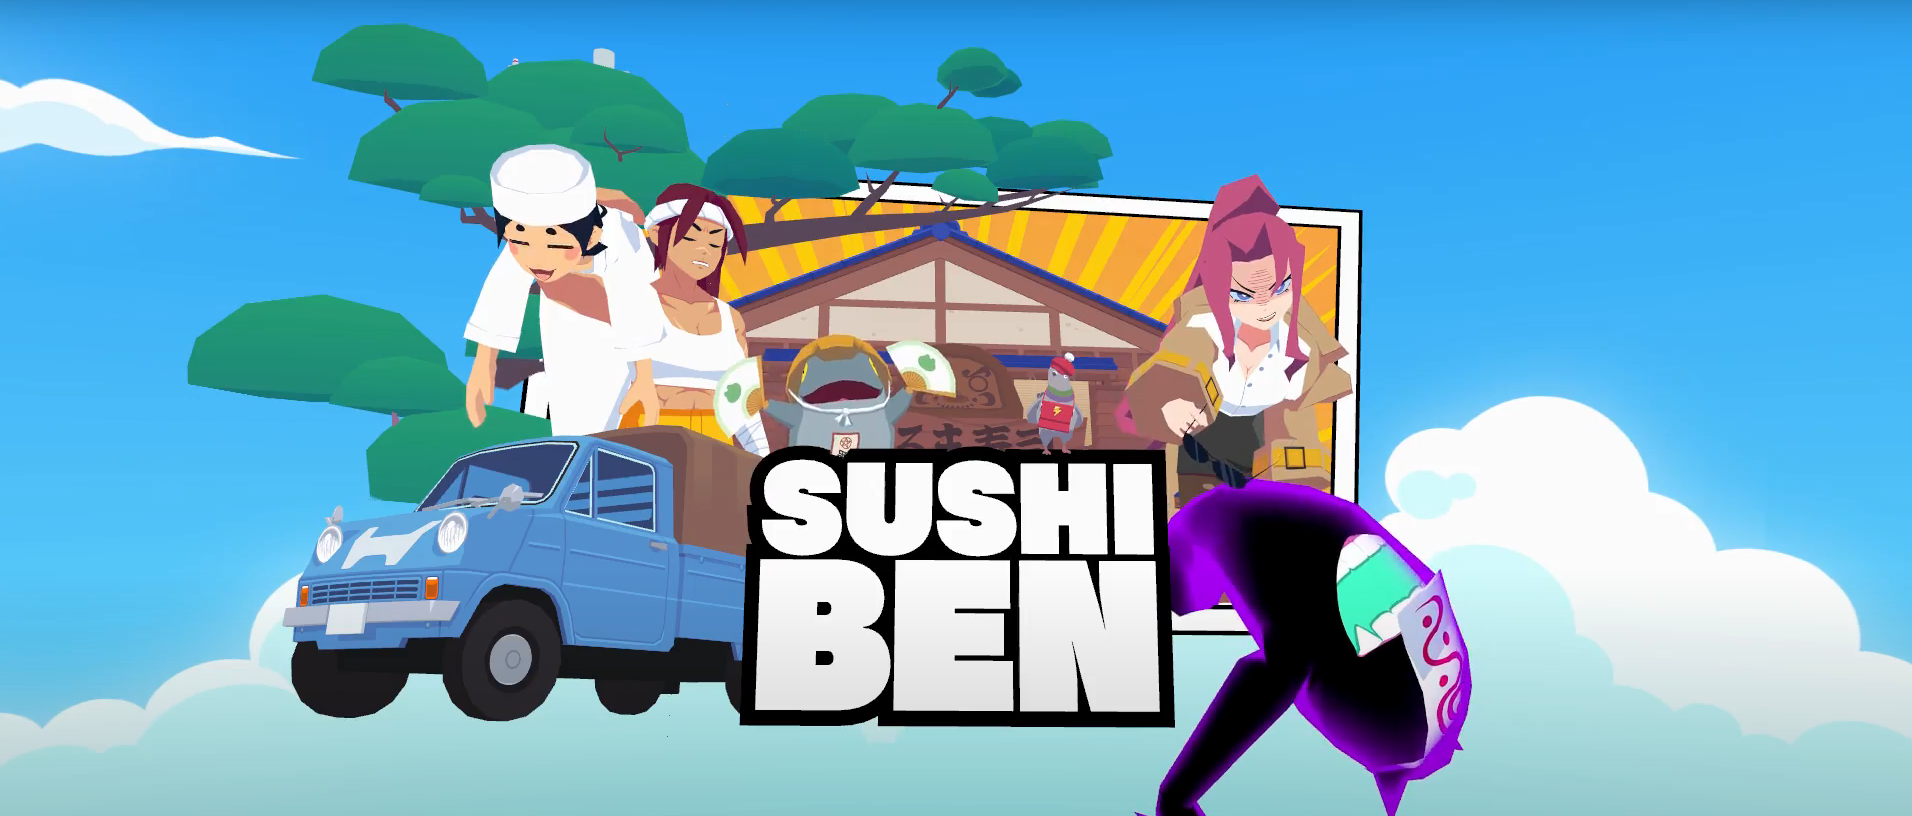 Sushi Ben